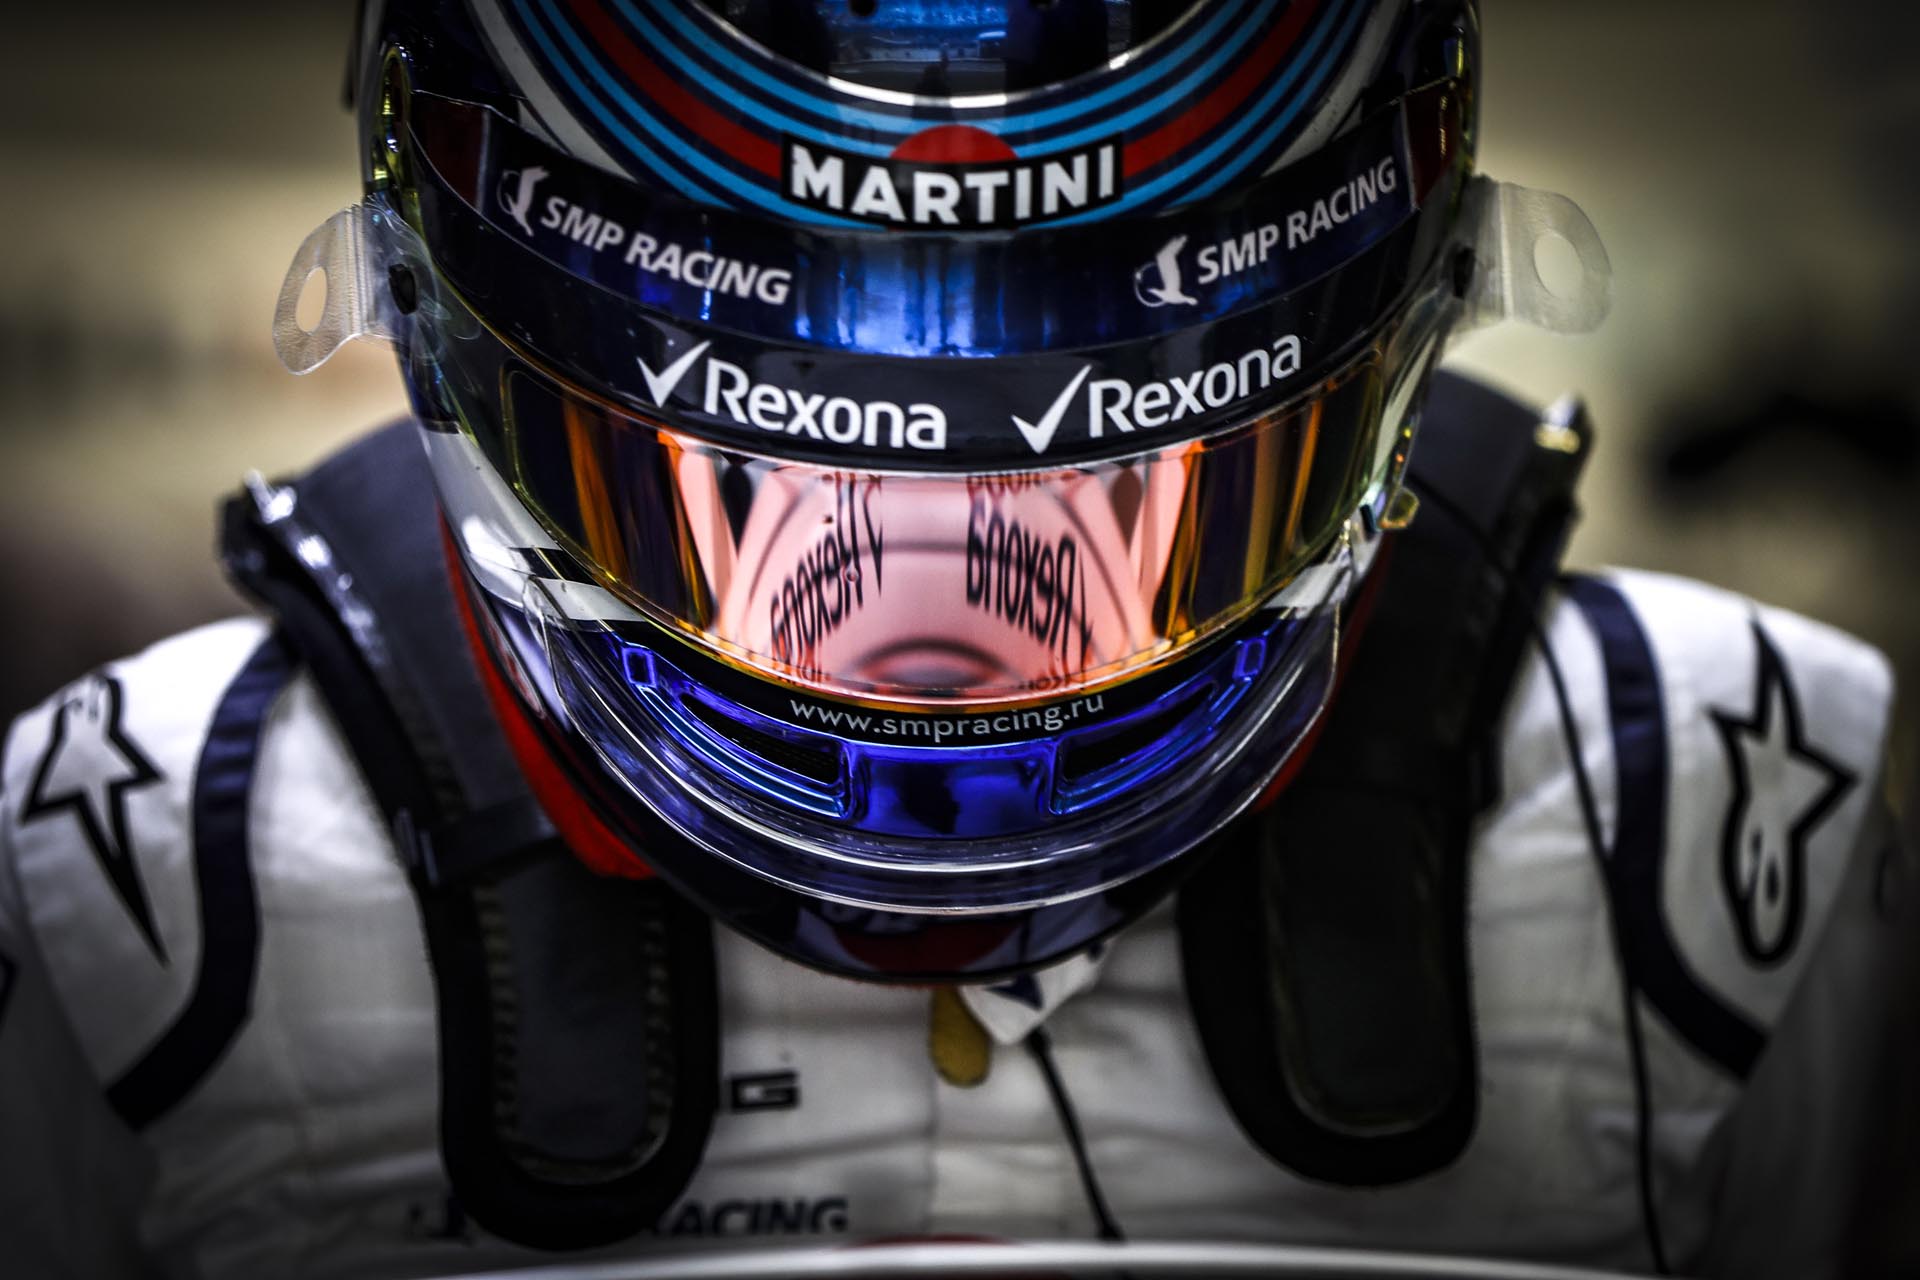 В воскресенье на автодроме имени братьев Родригес в Мехико состоялся Гран-при Мексики, девятнадцатый этап чемпионата мира Формула 1. Пилот программы SMP Racing, гонщик команды Williams Martini Racing Сергей Сироткин занял в гонке 13-е место.